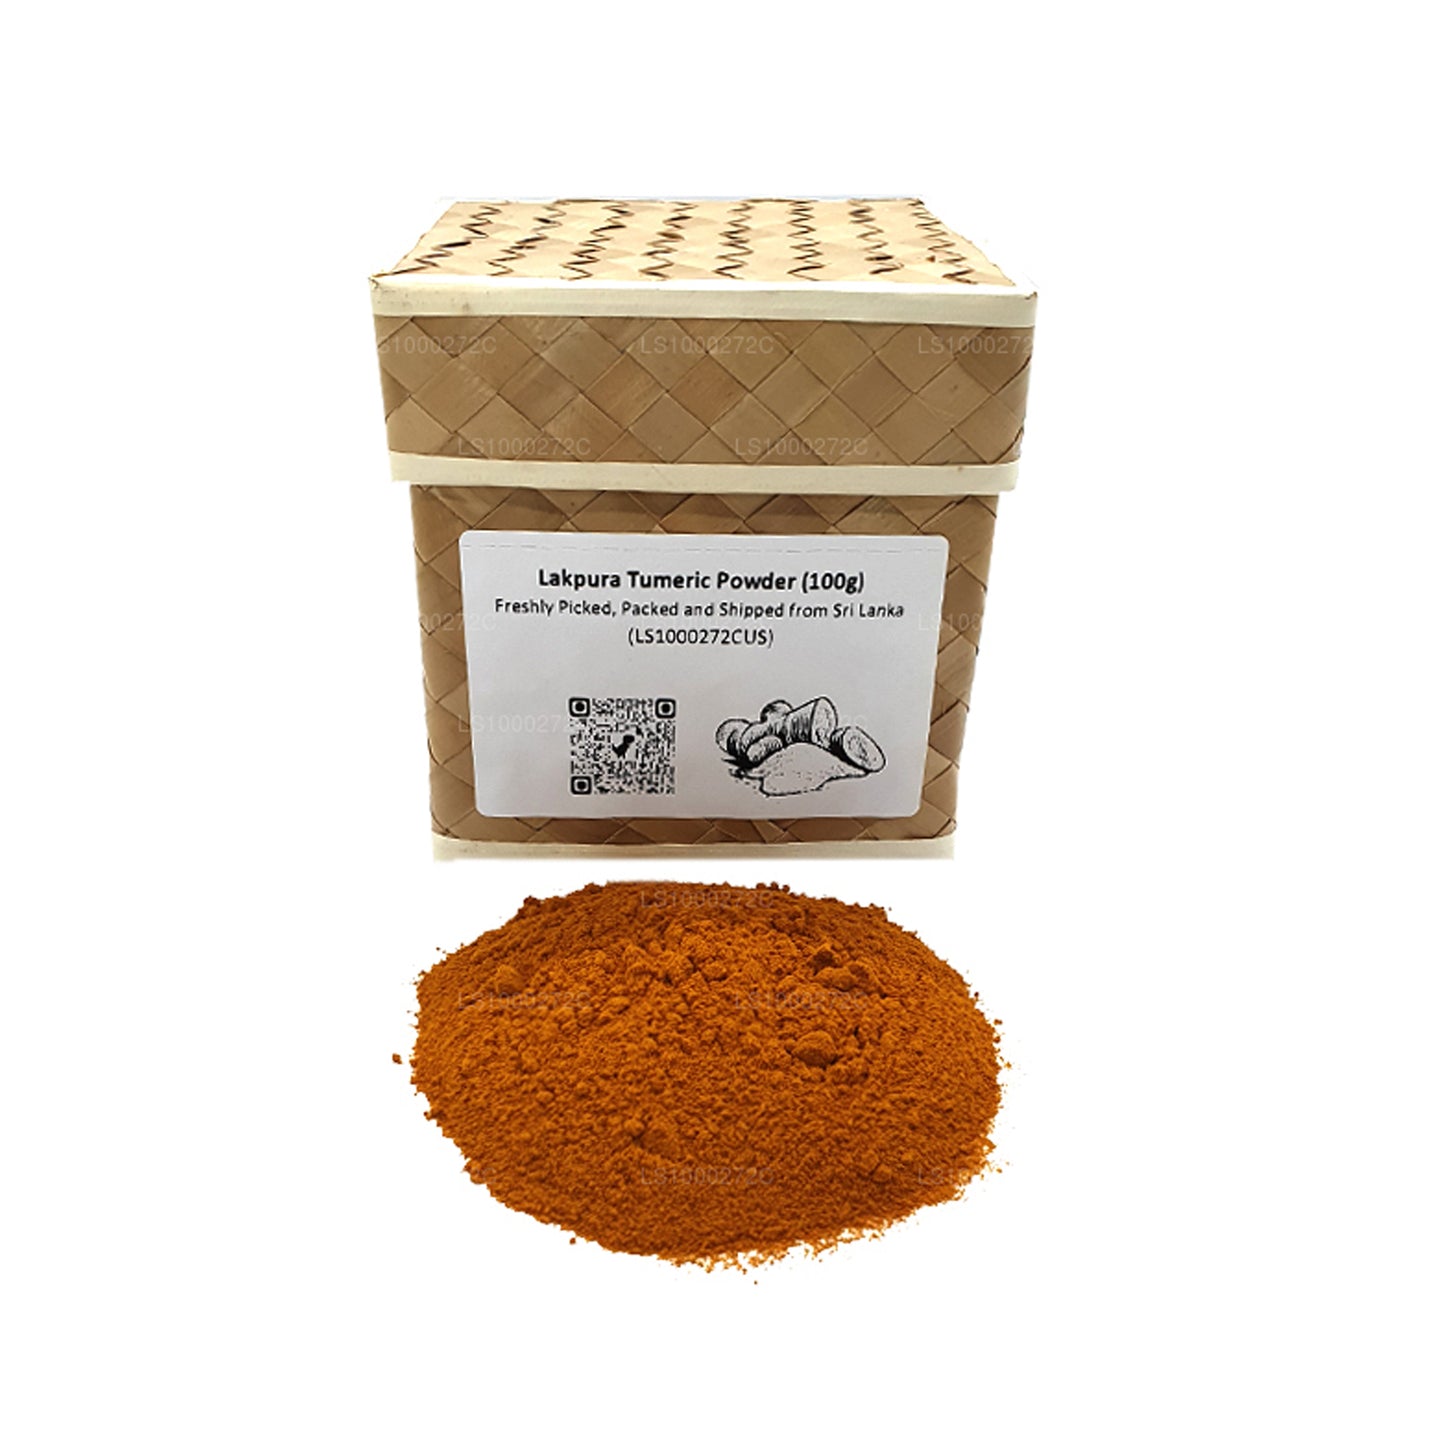 Lakpura Turmeric Powder (100g)